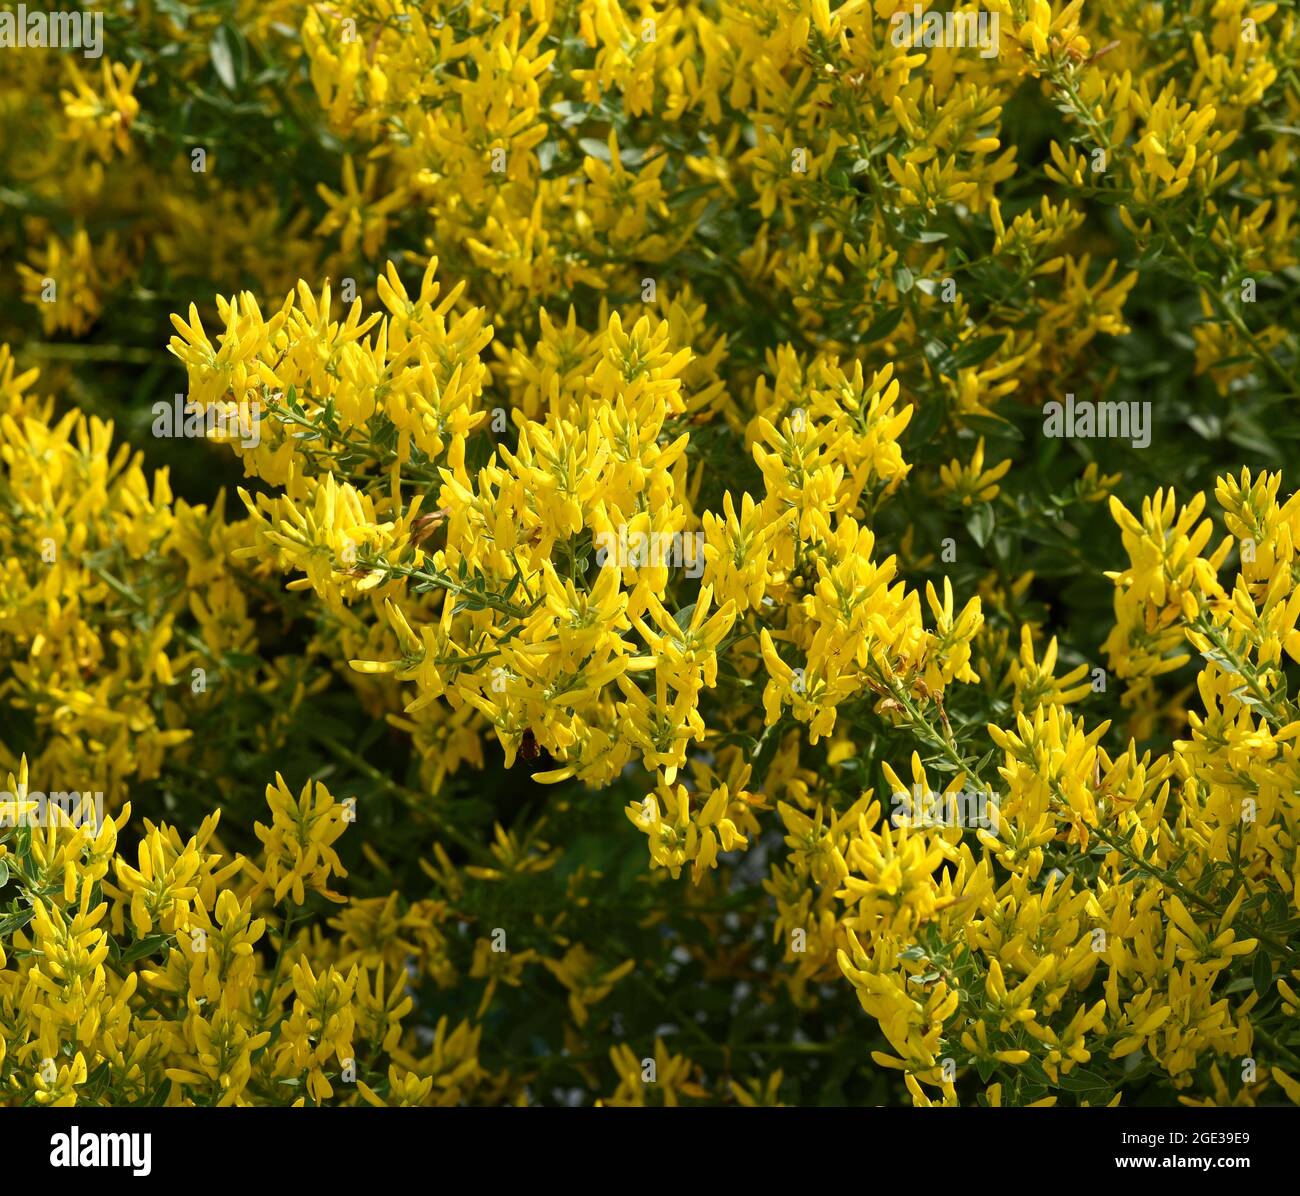 Faerberginster, Genista tinctoria, ist eine wichtige Heilpflanze mit gelben Blueten und wird viel in der Medizin verwendet. Sie sind eine Staude und ge Stockfoto